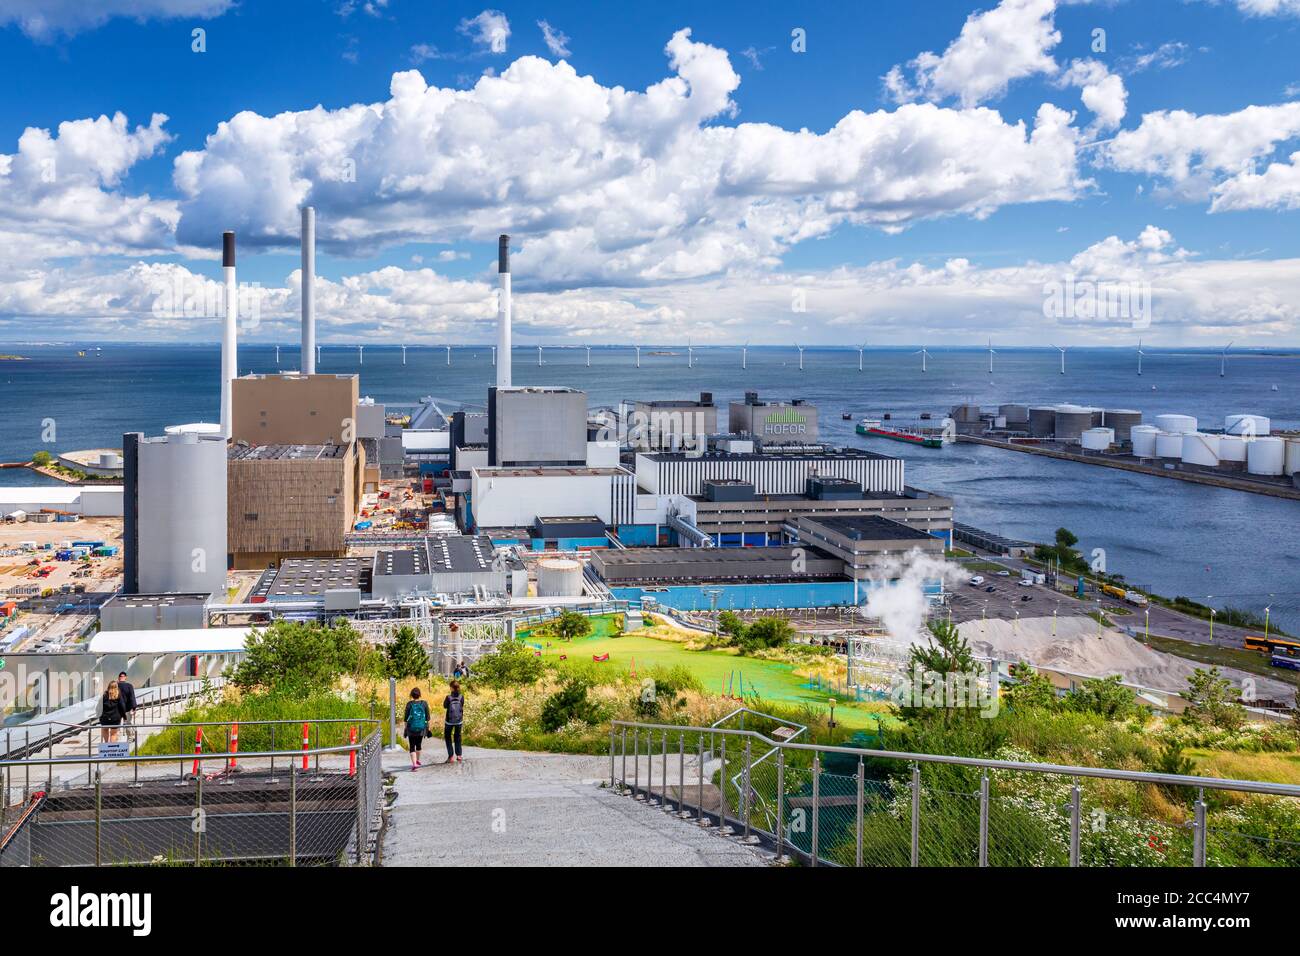 La vista desde la planta de energía de CopenHill, Copenhague, Dinamarca Foto de stock